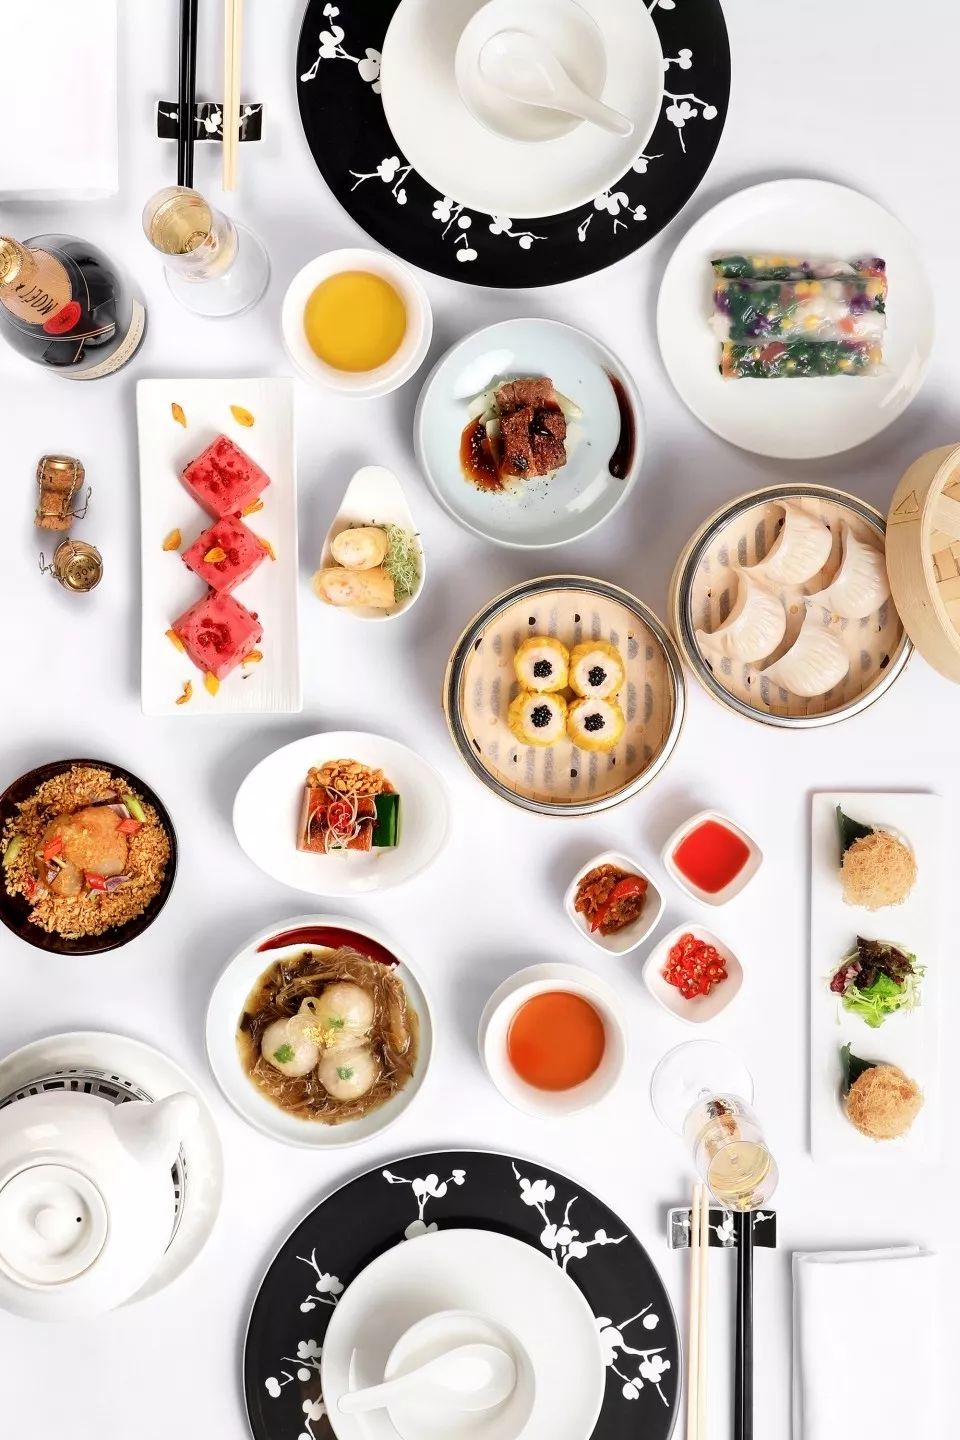 2019广州米其林榜单 11家最好吃的餐厅尘埃落定!广州人服吗?